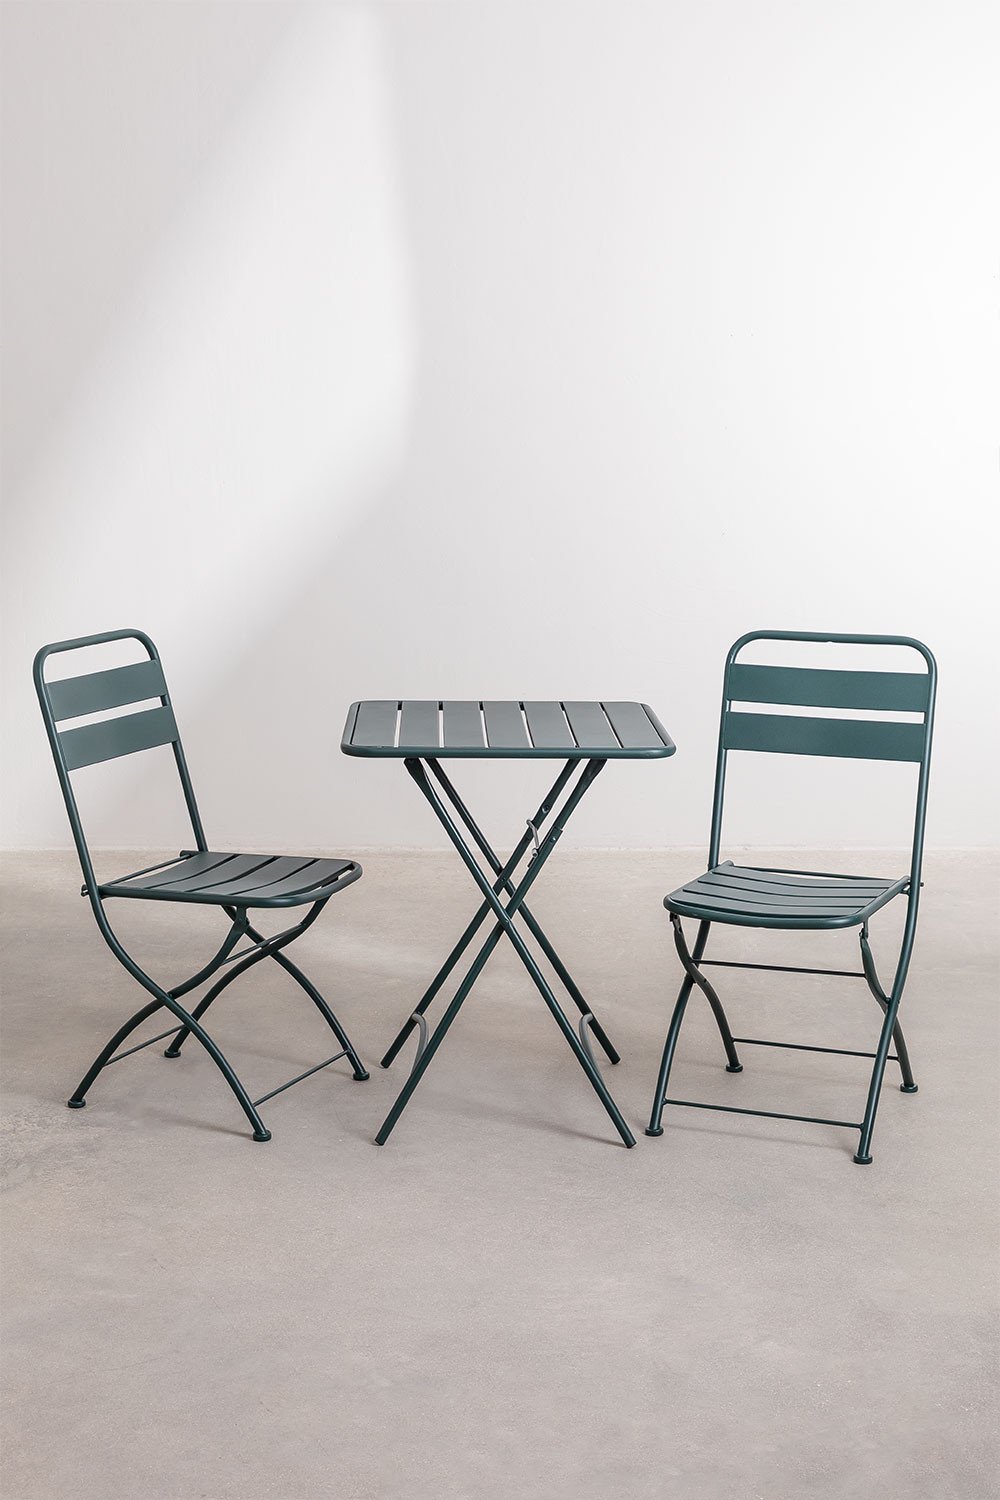 Tuinset met een inklapbare tafel (60X60 cm) & 2 Klapstoelen Janti, galerij beeld 1